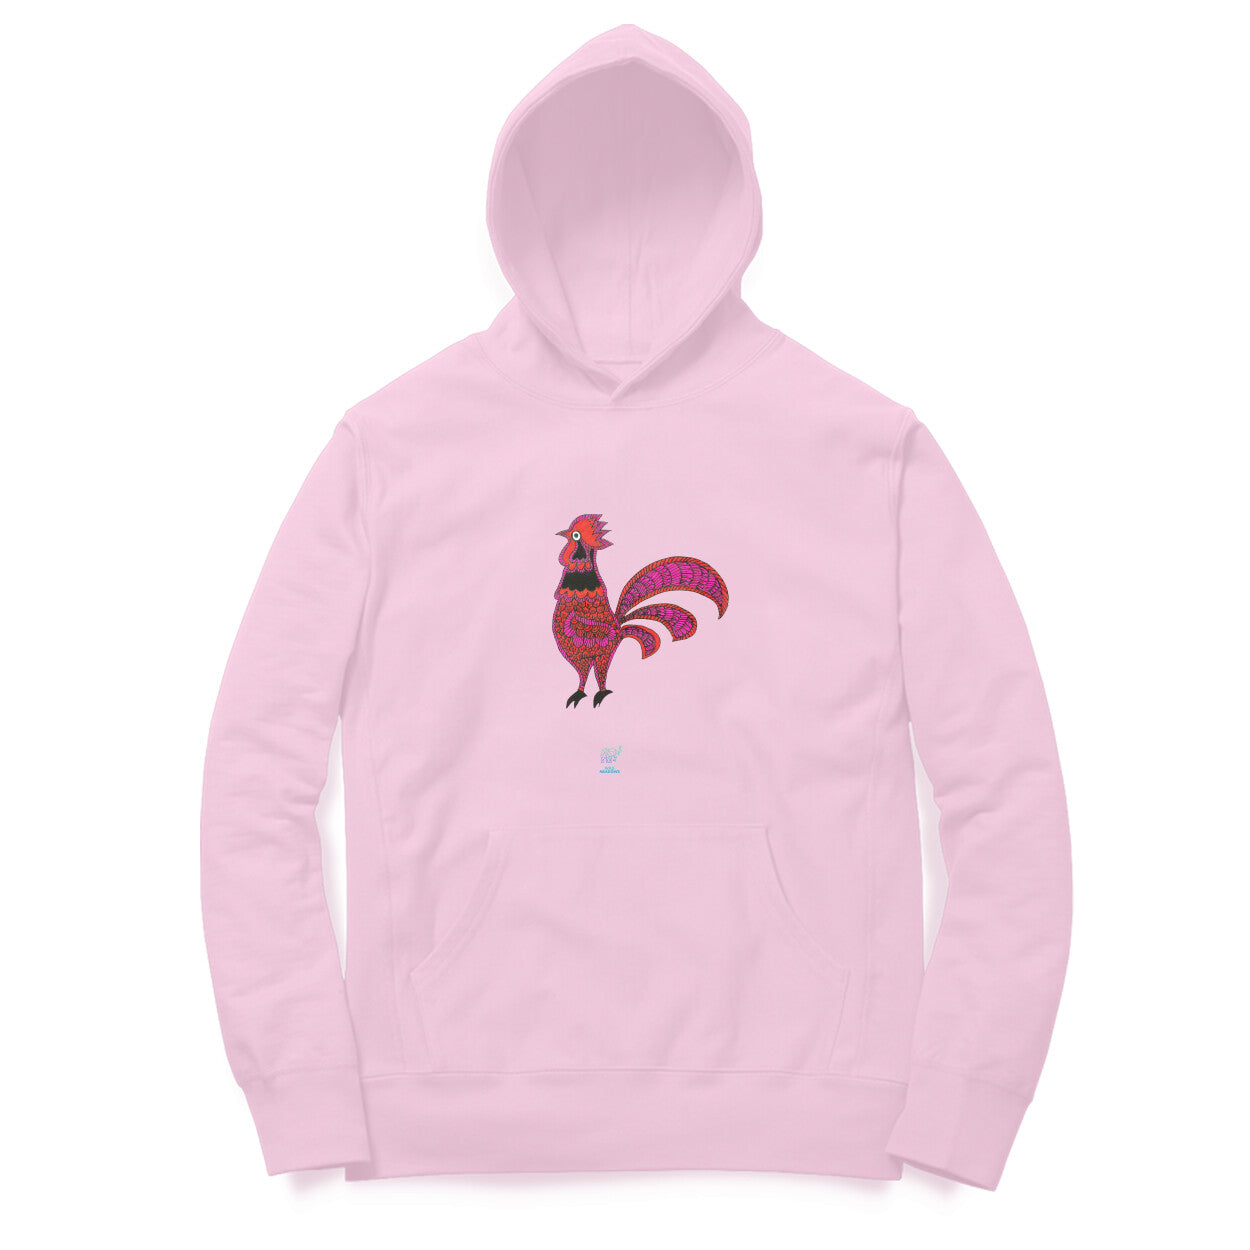 Cock- Unisex Hooded Sweatshirt